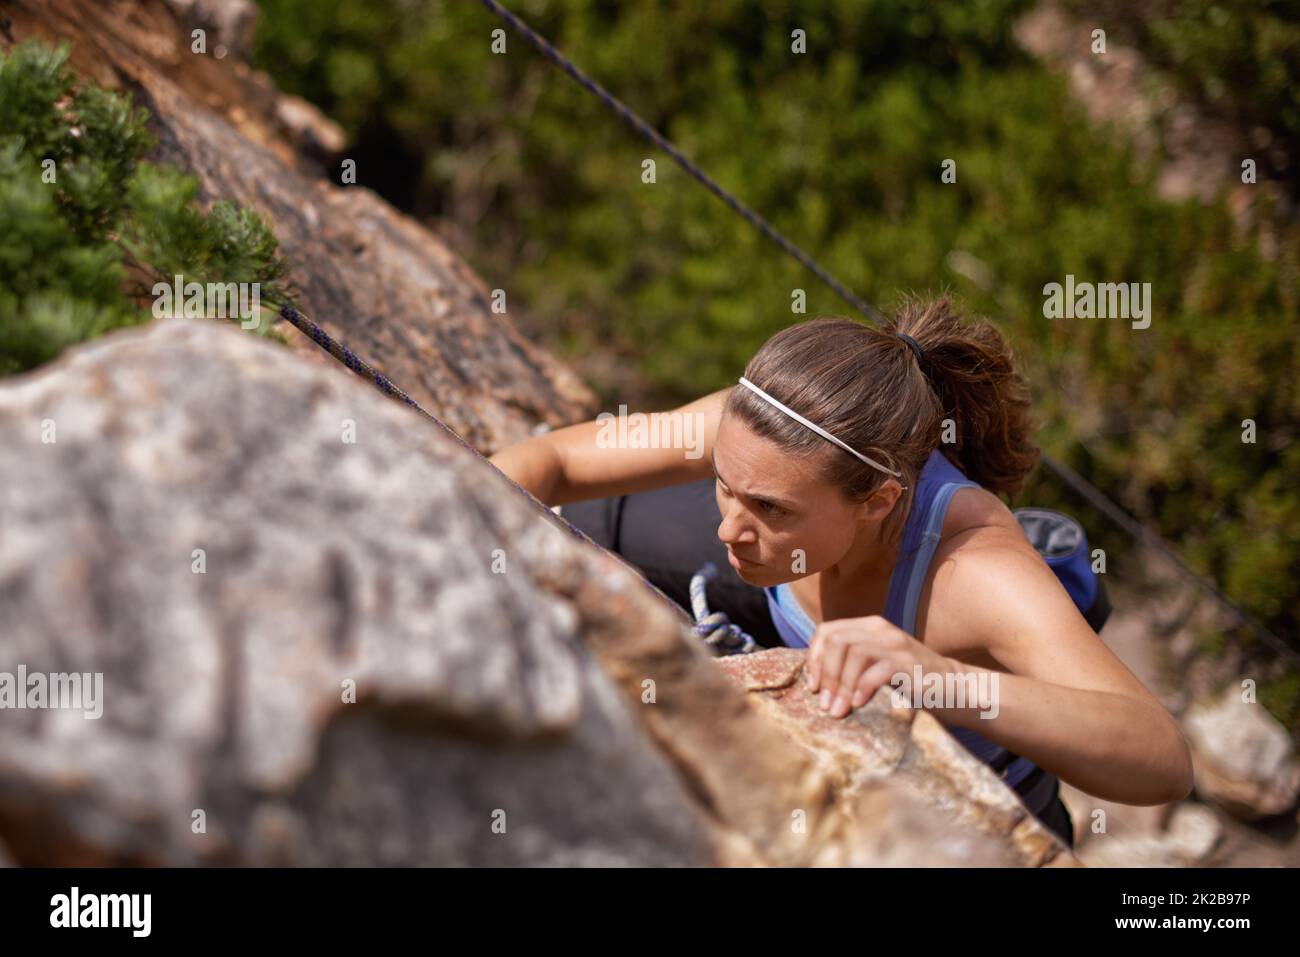 Shes entschlossen, die Spitze zu erreichen. Aufnahme einer jungen Frau, die einen Bergfelsen klettert. Stockfoto